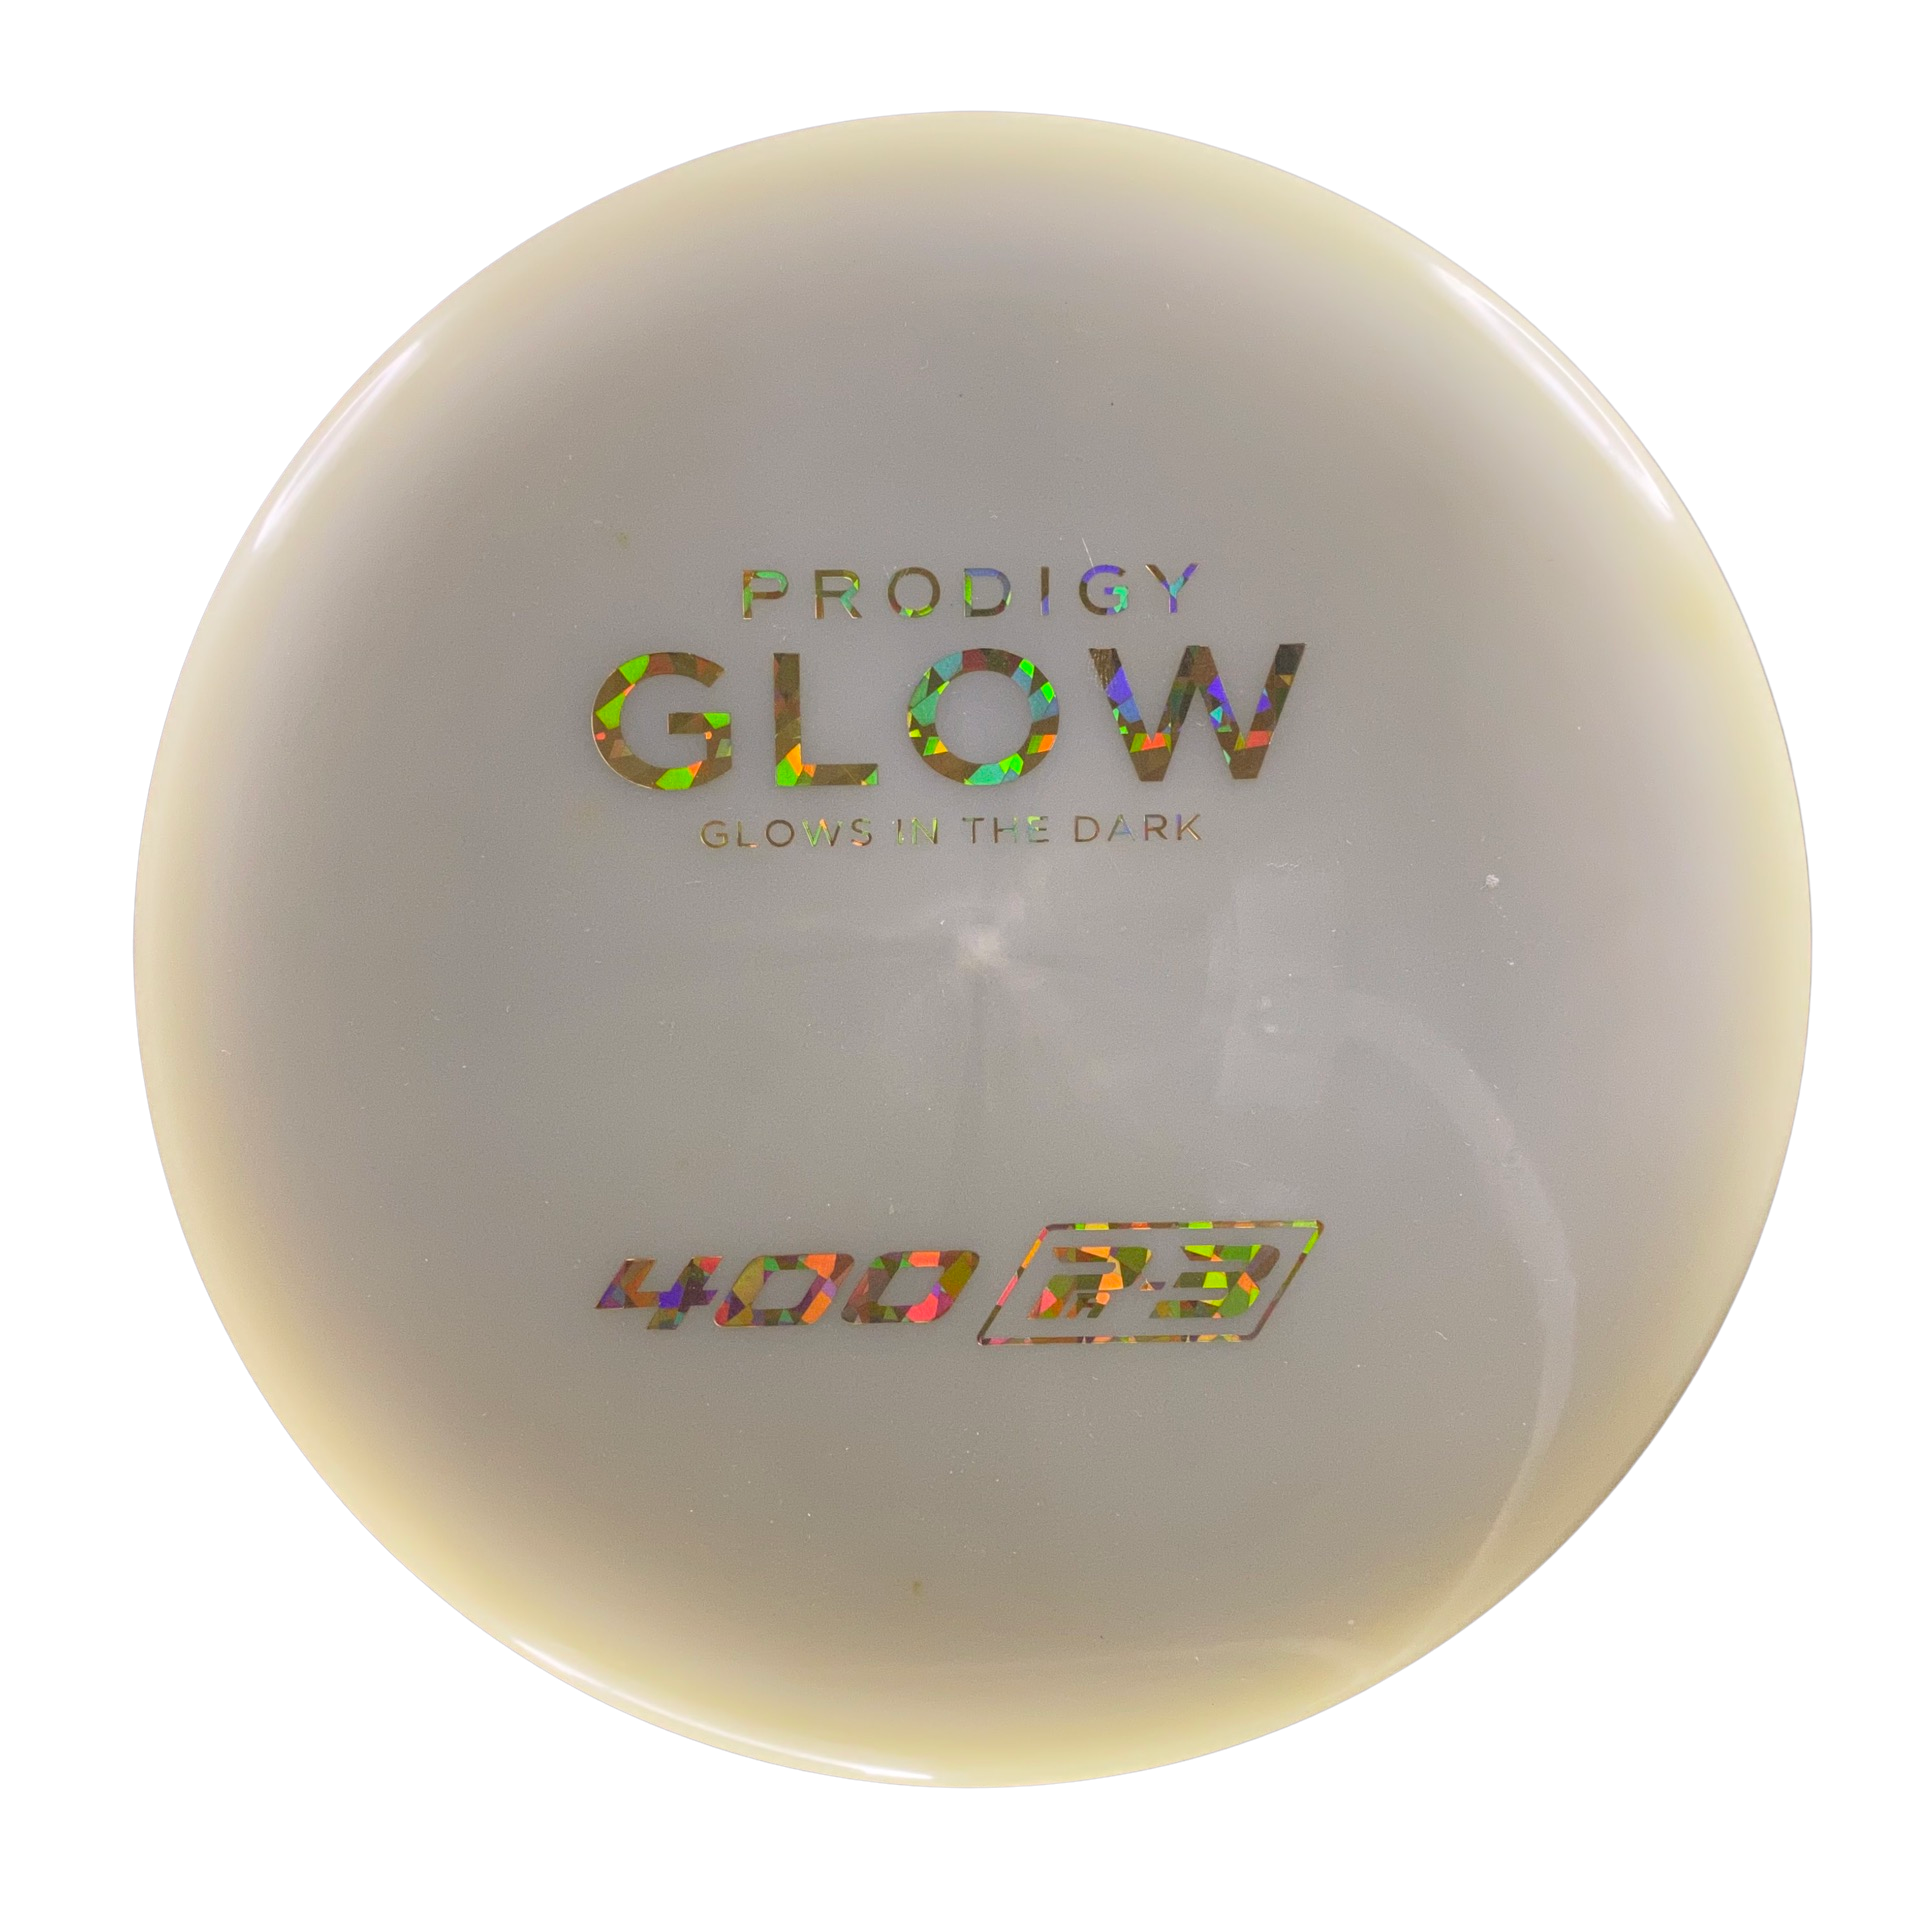 Prodigy 400 Glow Pa3